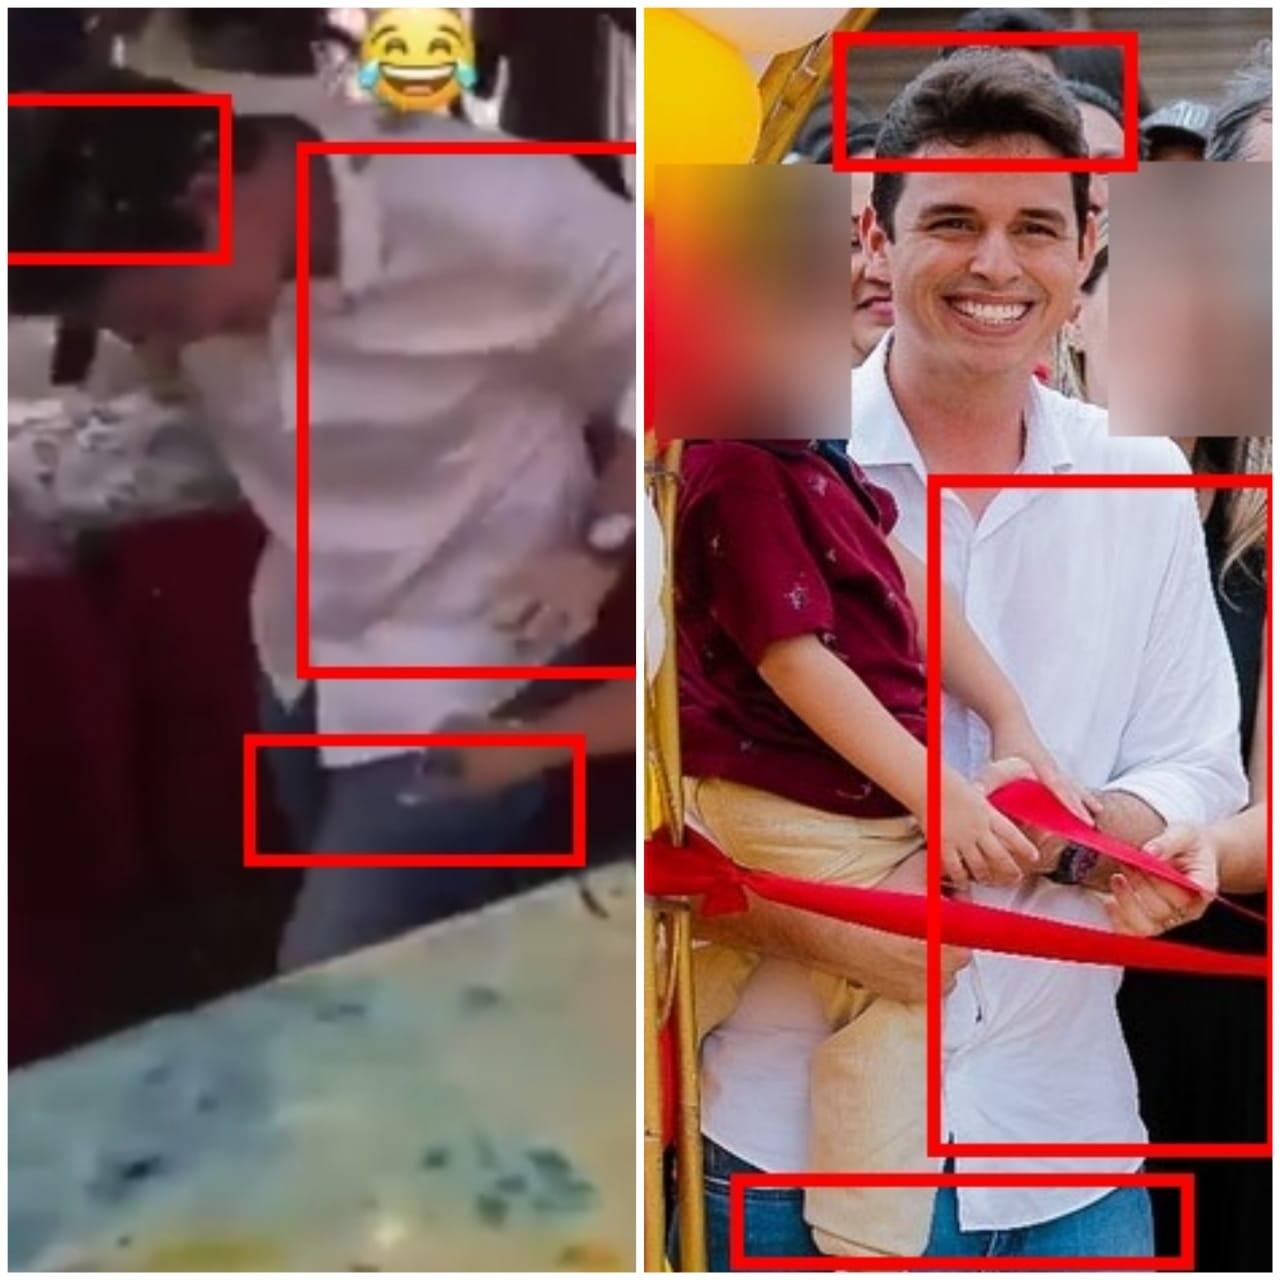 Comparativo entre o homem de branco que aparece no vídeo e o prefeito Ivo Rezende mostra que se trata da mesma pessoa.